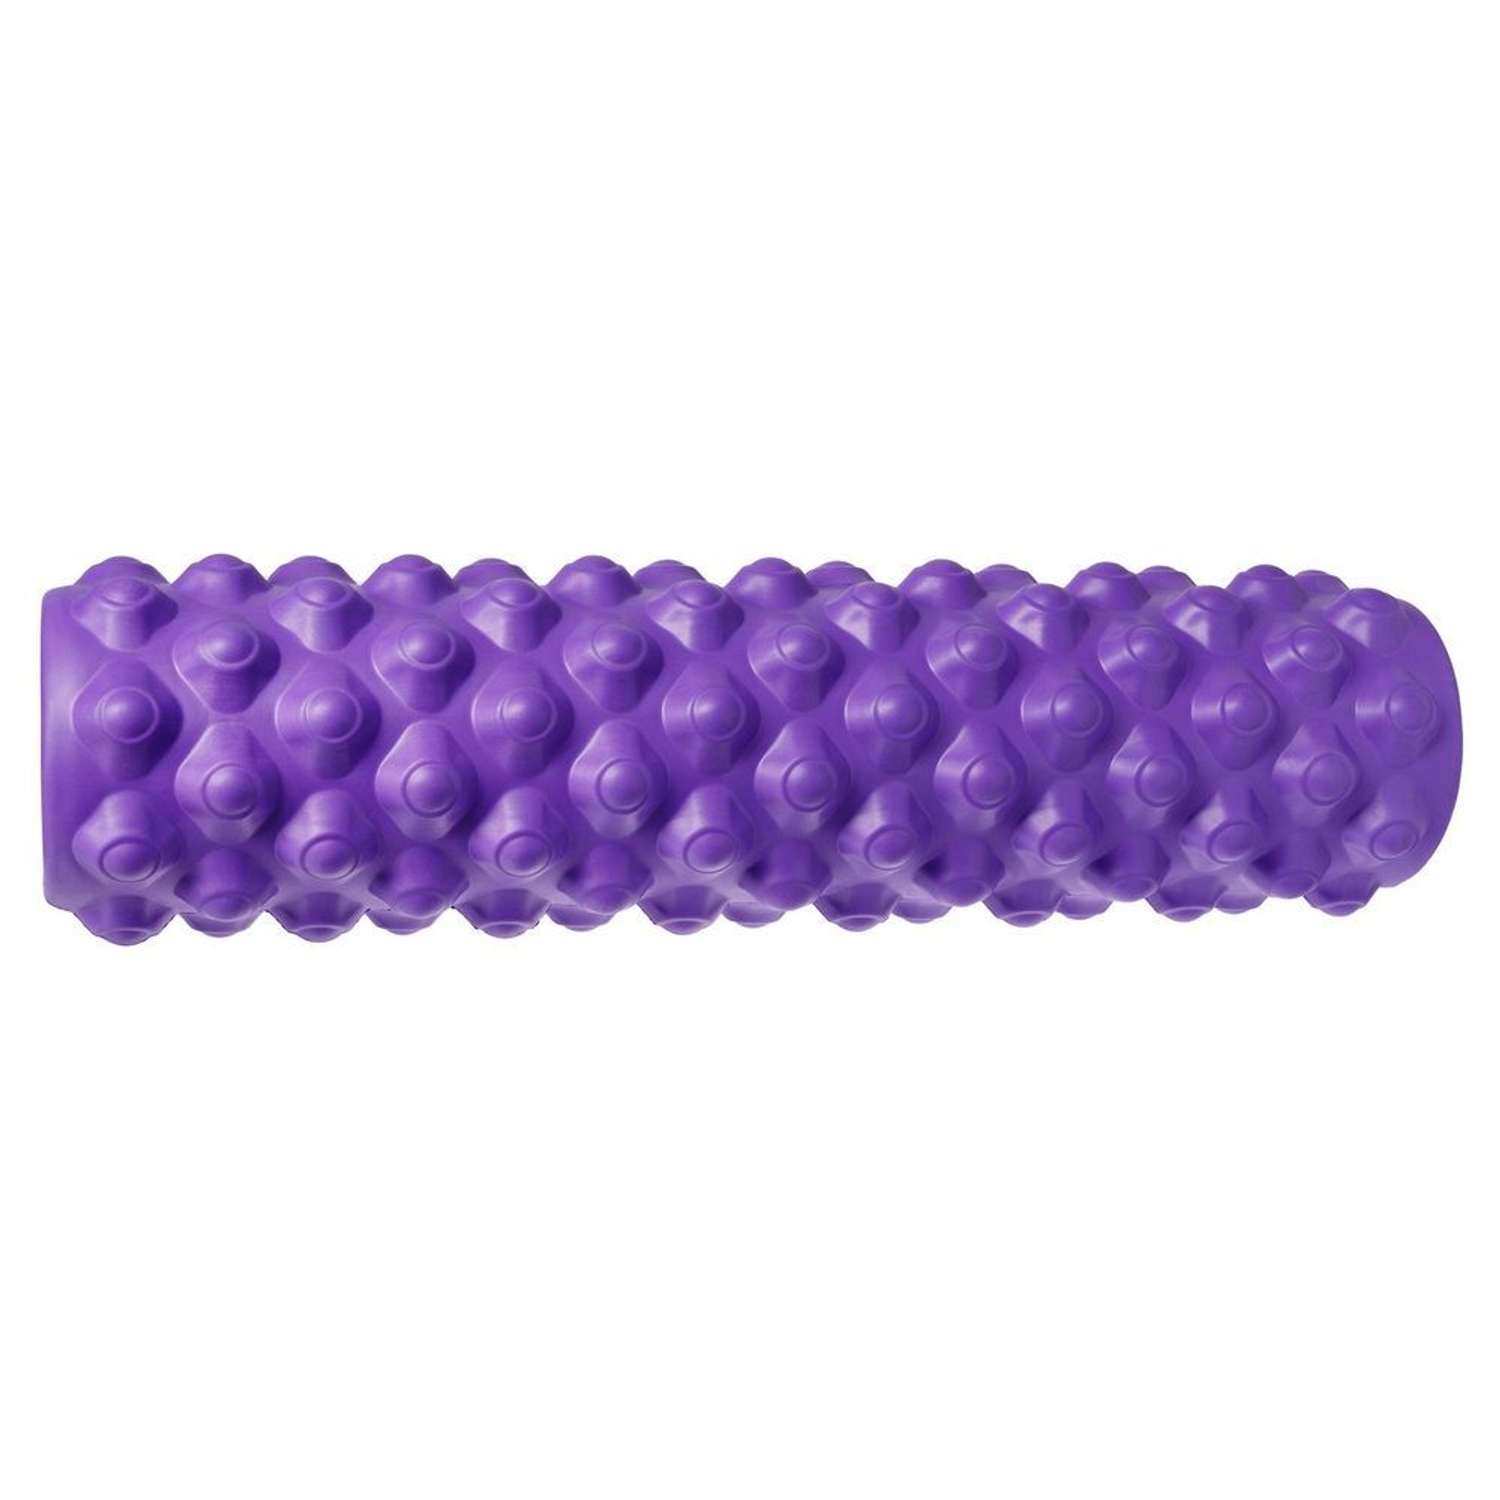 Ролик массажный STRONG BODY с шипами спортивный для фитнеса МФР йоги и пилатес 45 см х 12 см фиолетовый - фото 2